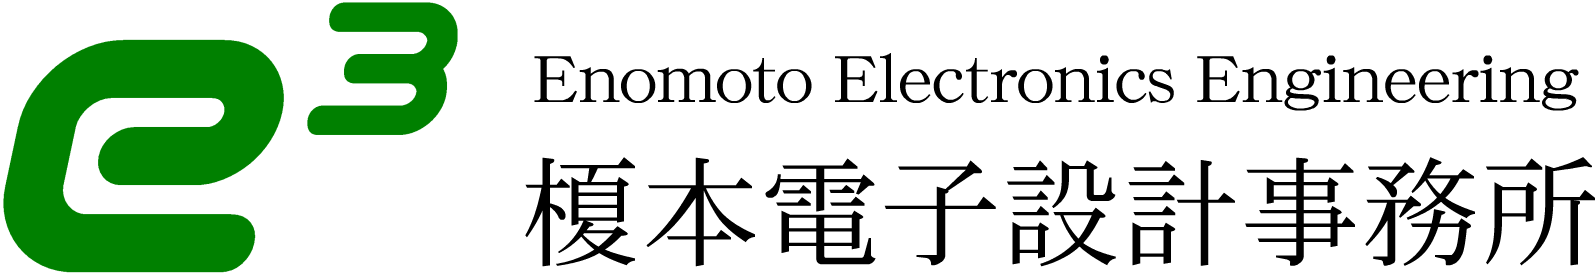 榎本電子設計事務所 のロゴ